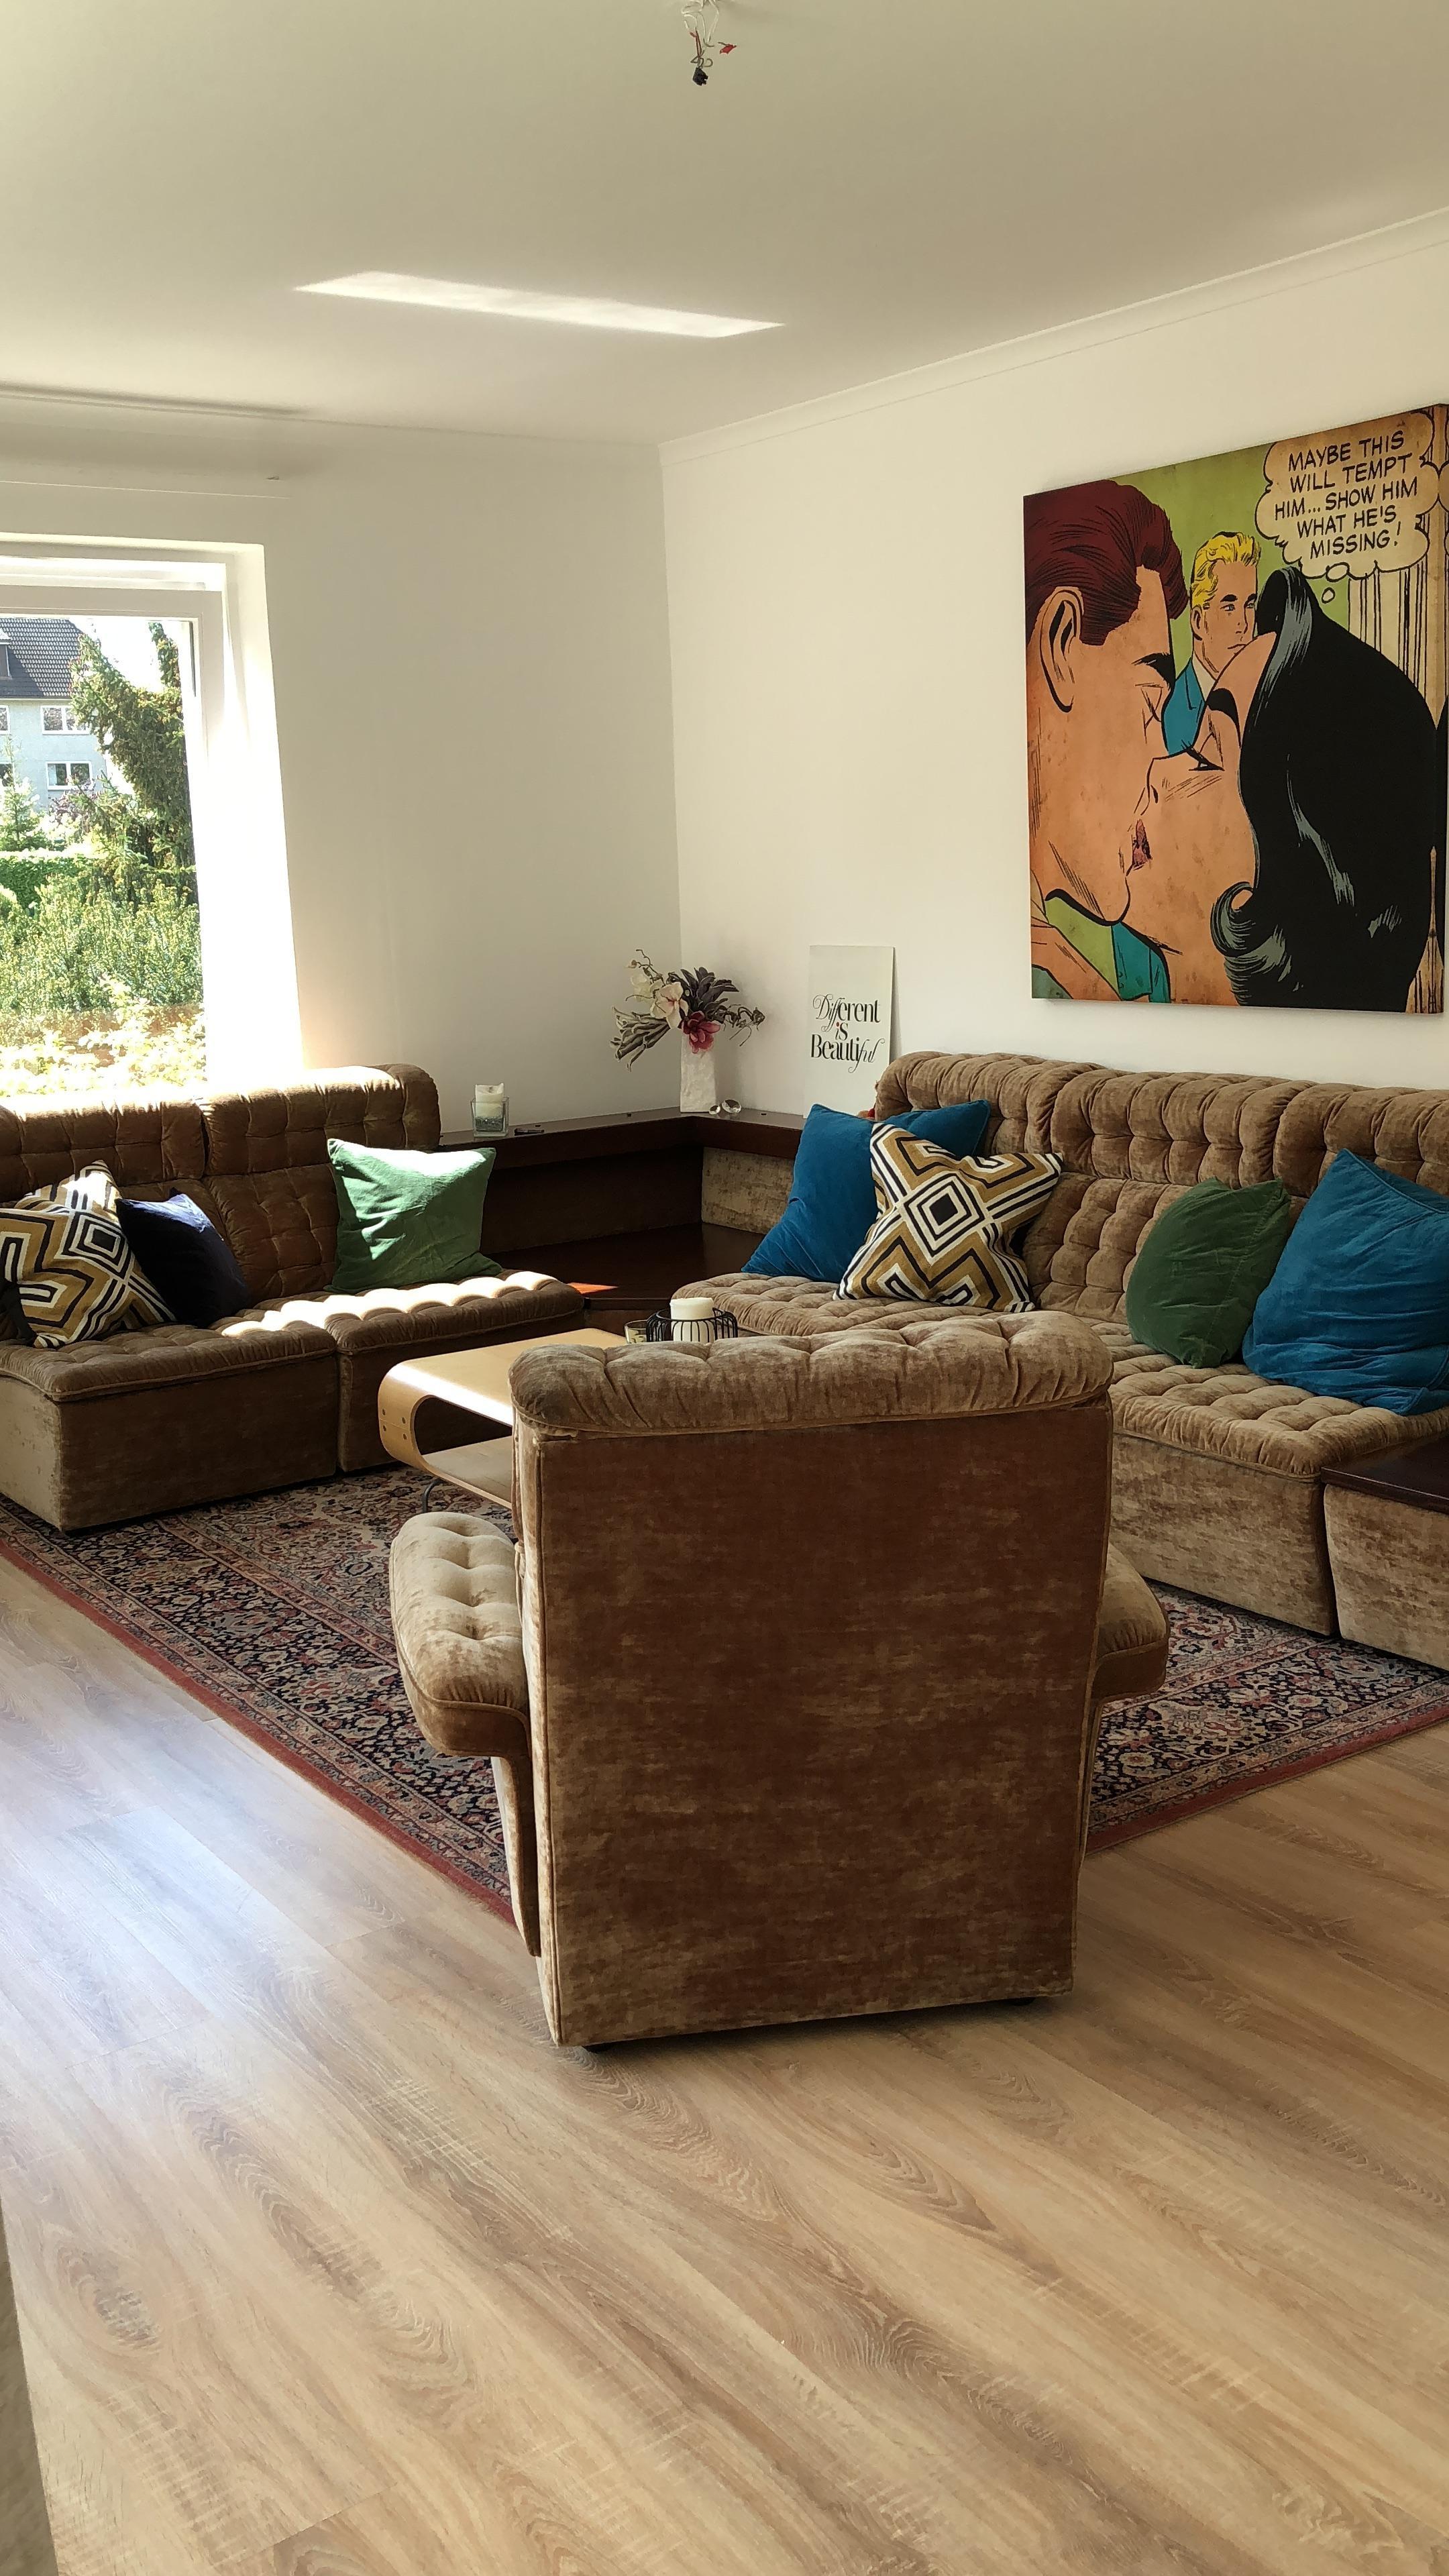 Ein Sofa für die ganze Familie? Geht! In Kombination mit verschiedenen Stilen #couchliebt #retro